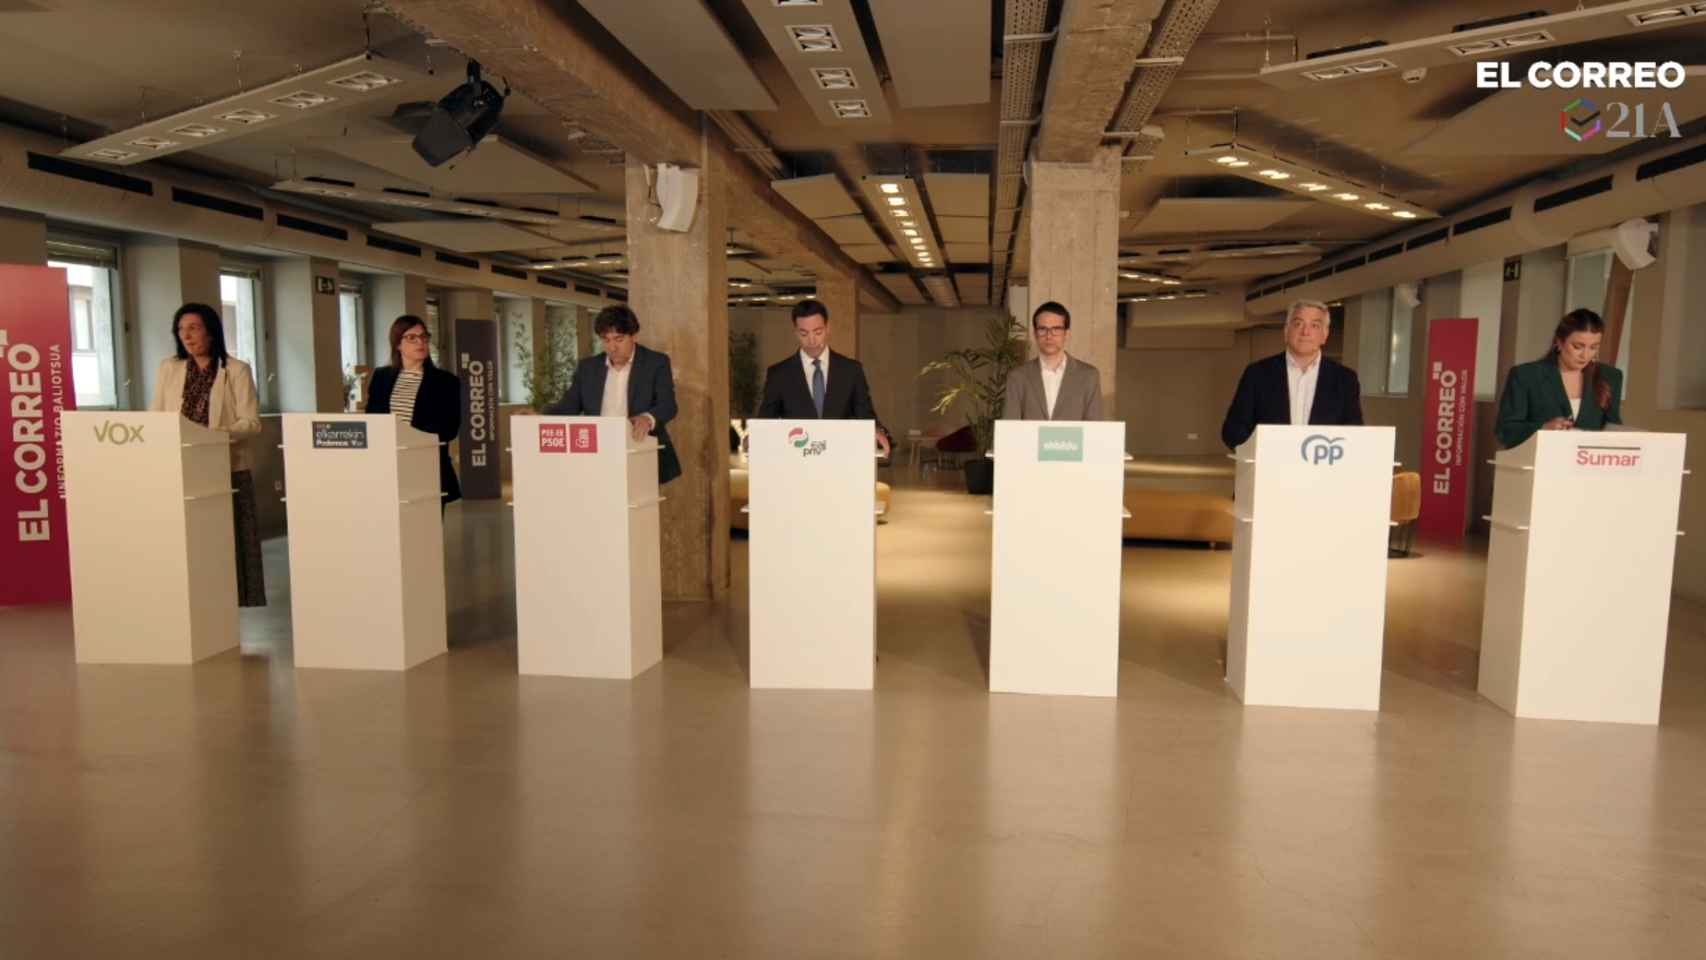 Candidatos a lehendakari en el debate de El Correo / Captura